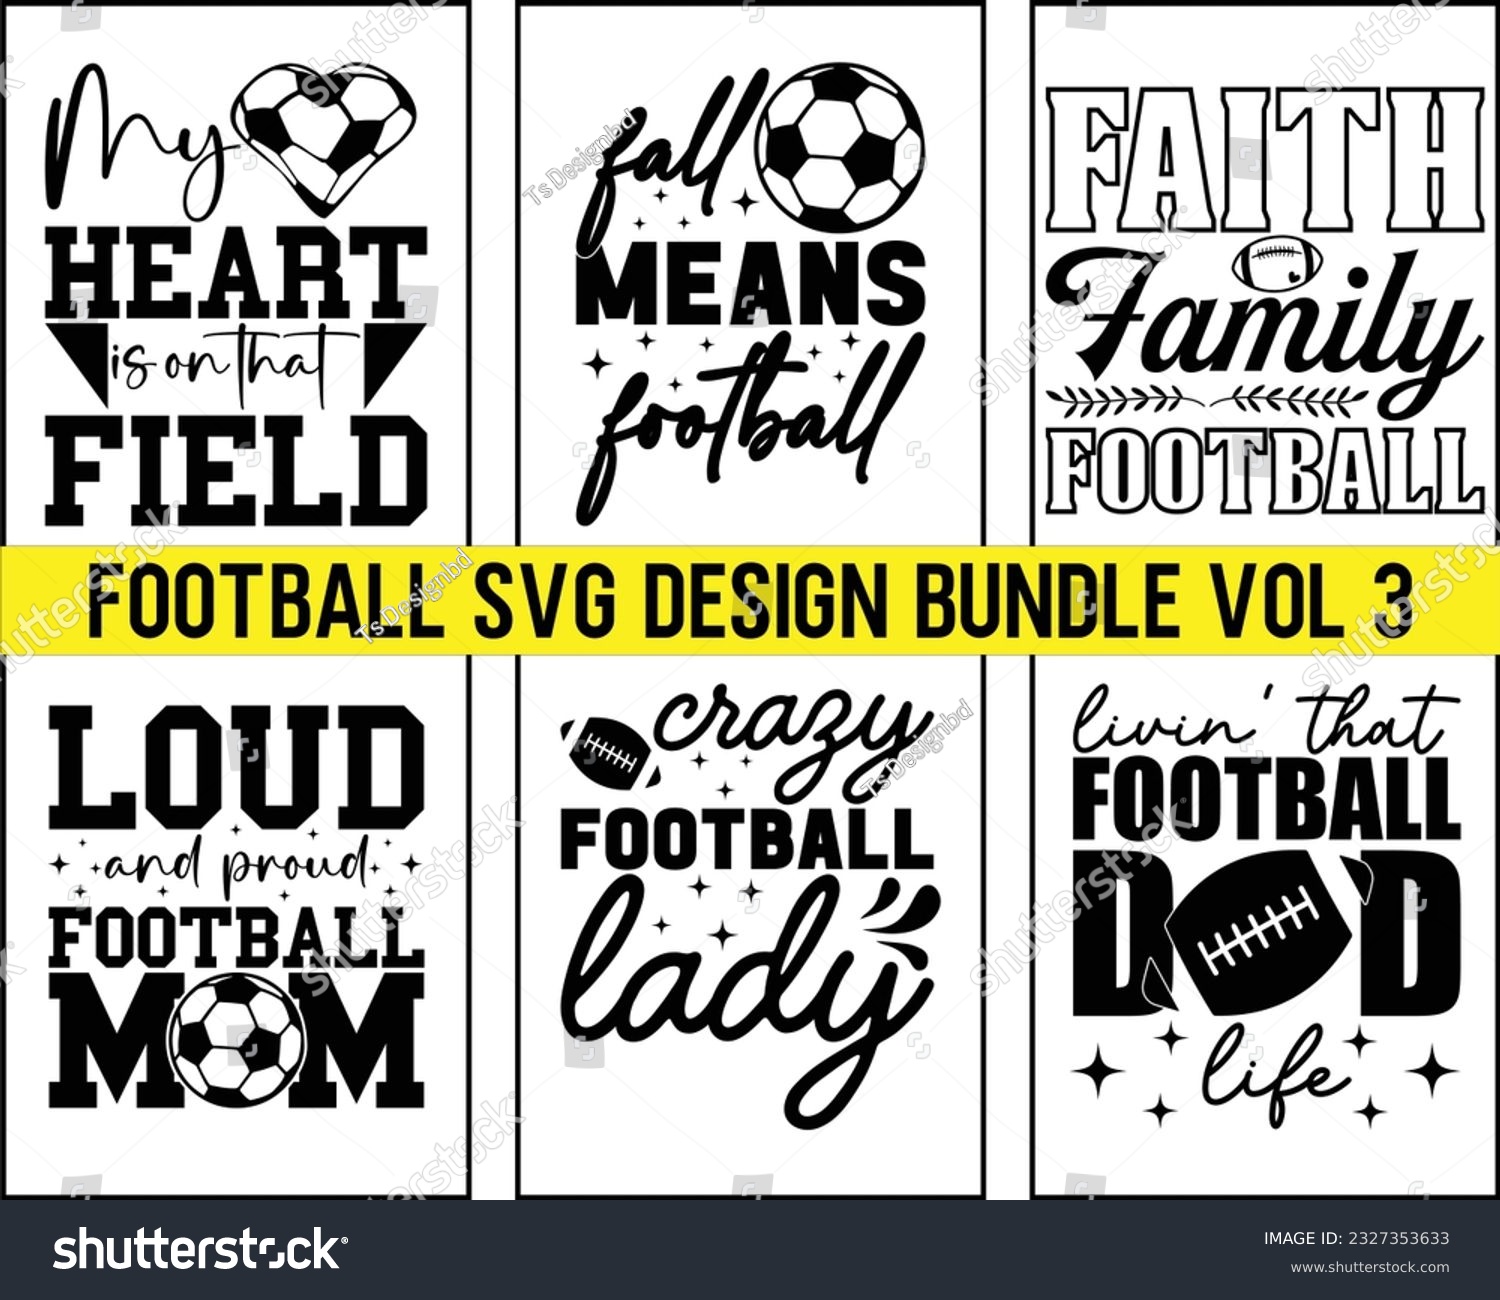 SVG of  Football Svg Design Bundle Vol 3,Football svg Bundle,Football Game Day svg, Funny Footbal Sayings,Cut Files,Eps File,Football Mom Dad Sister SVG,Svg Bundle svg